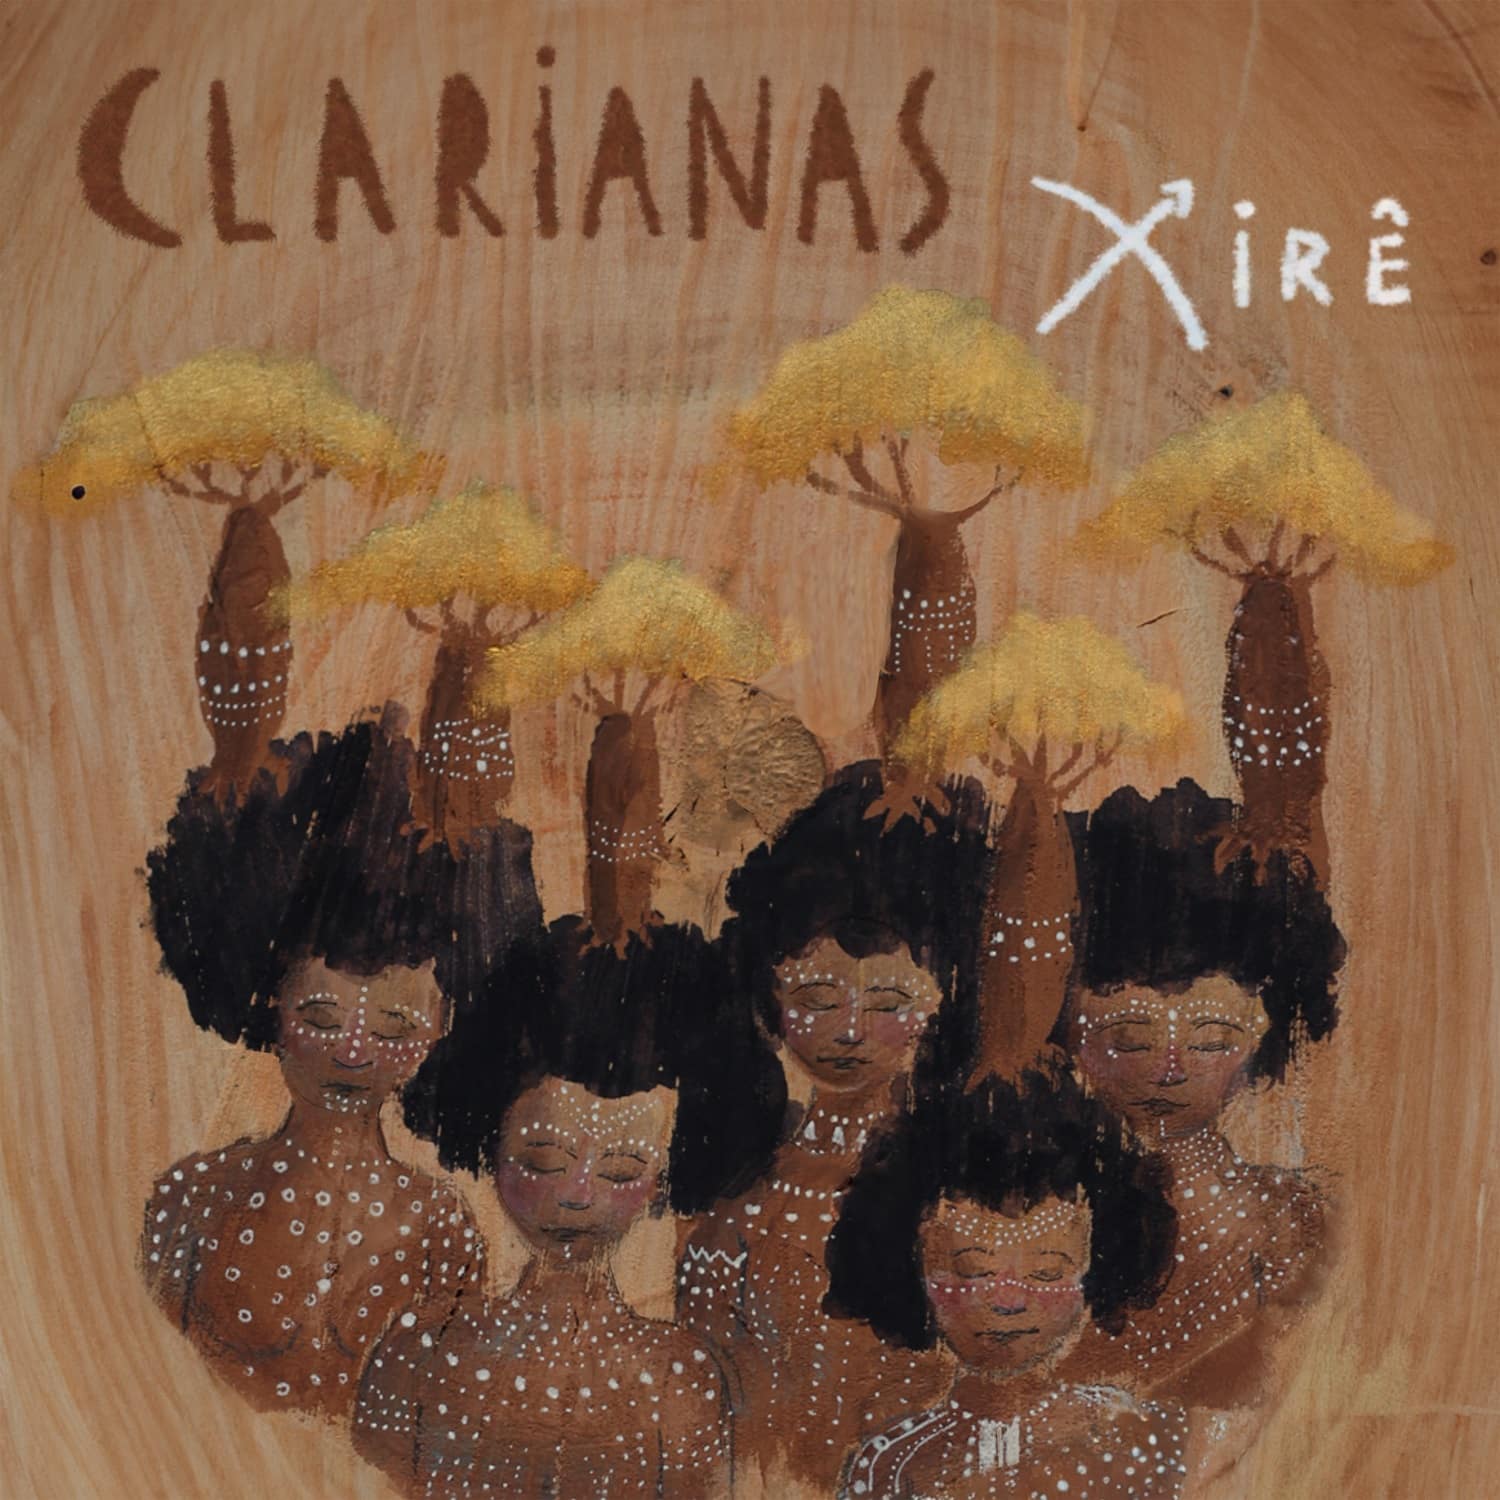 revistaprosaversoearte.com - Clarianas aprofunda pesquisa das raízes musicais afro-brasileiras no álbum 'Xirê'